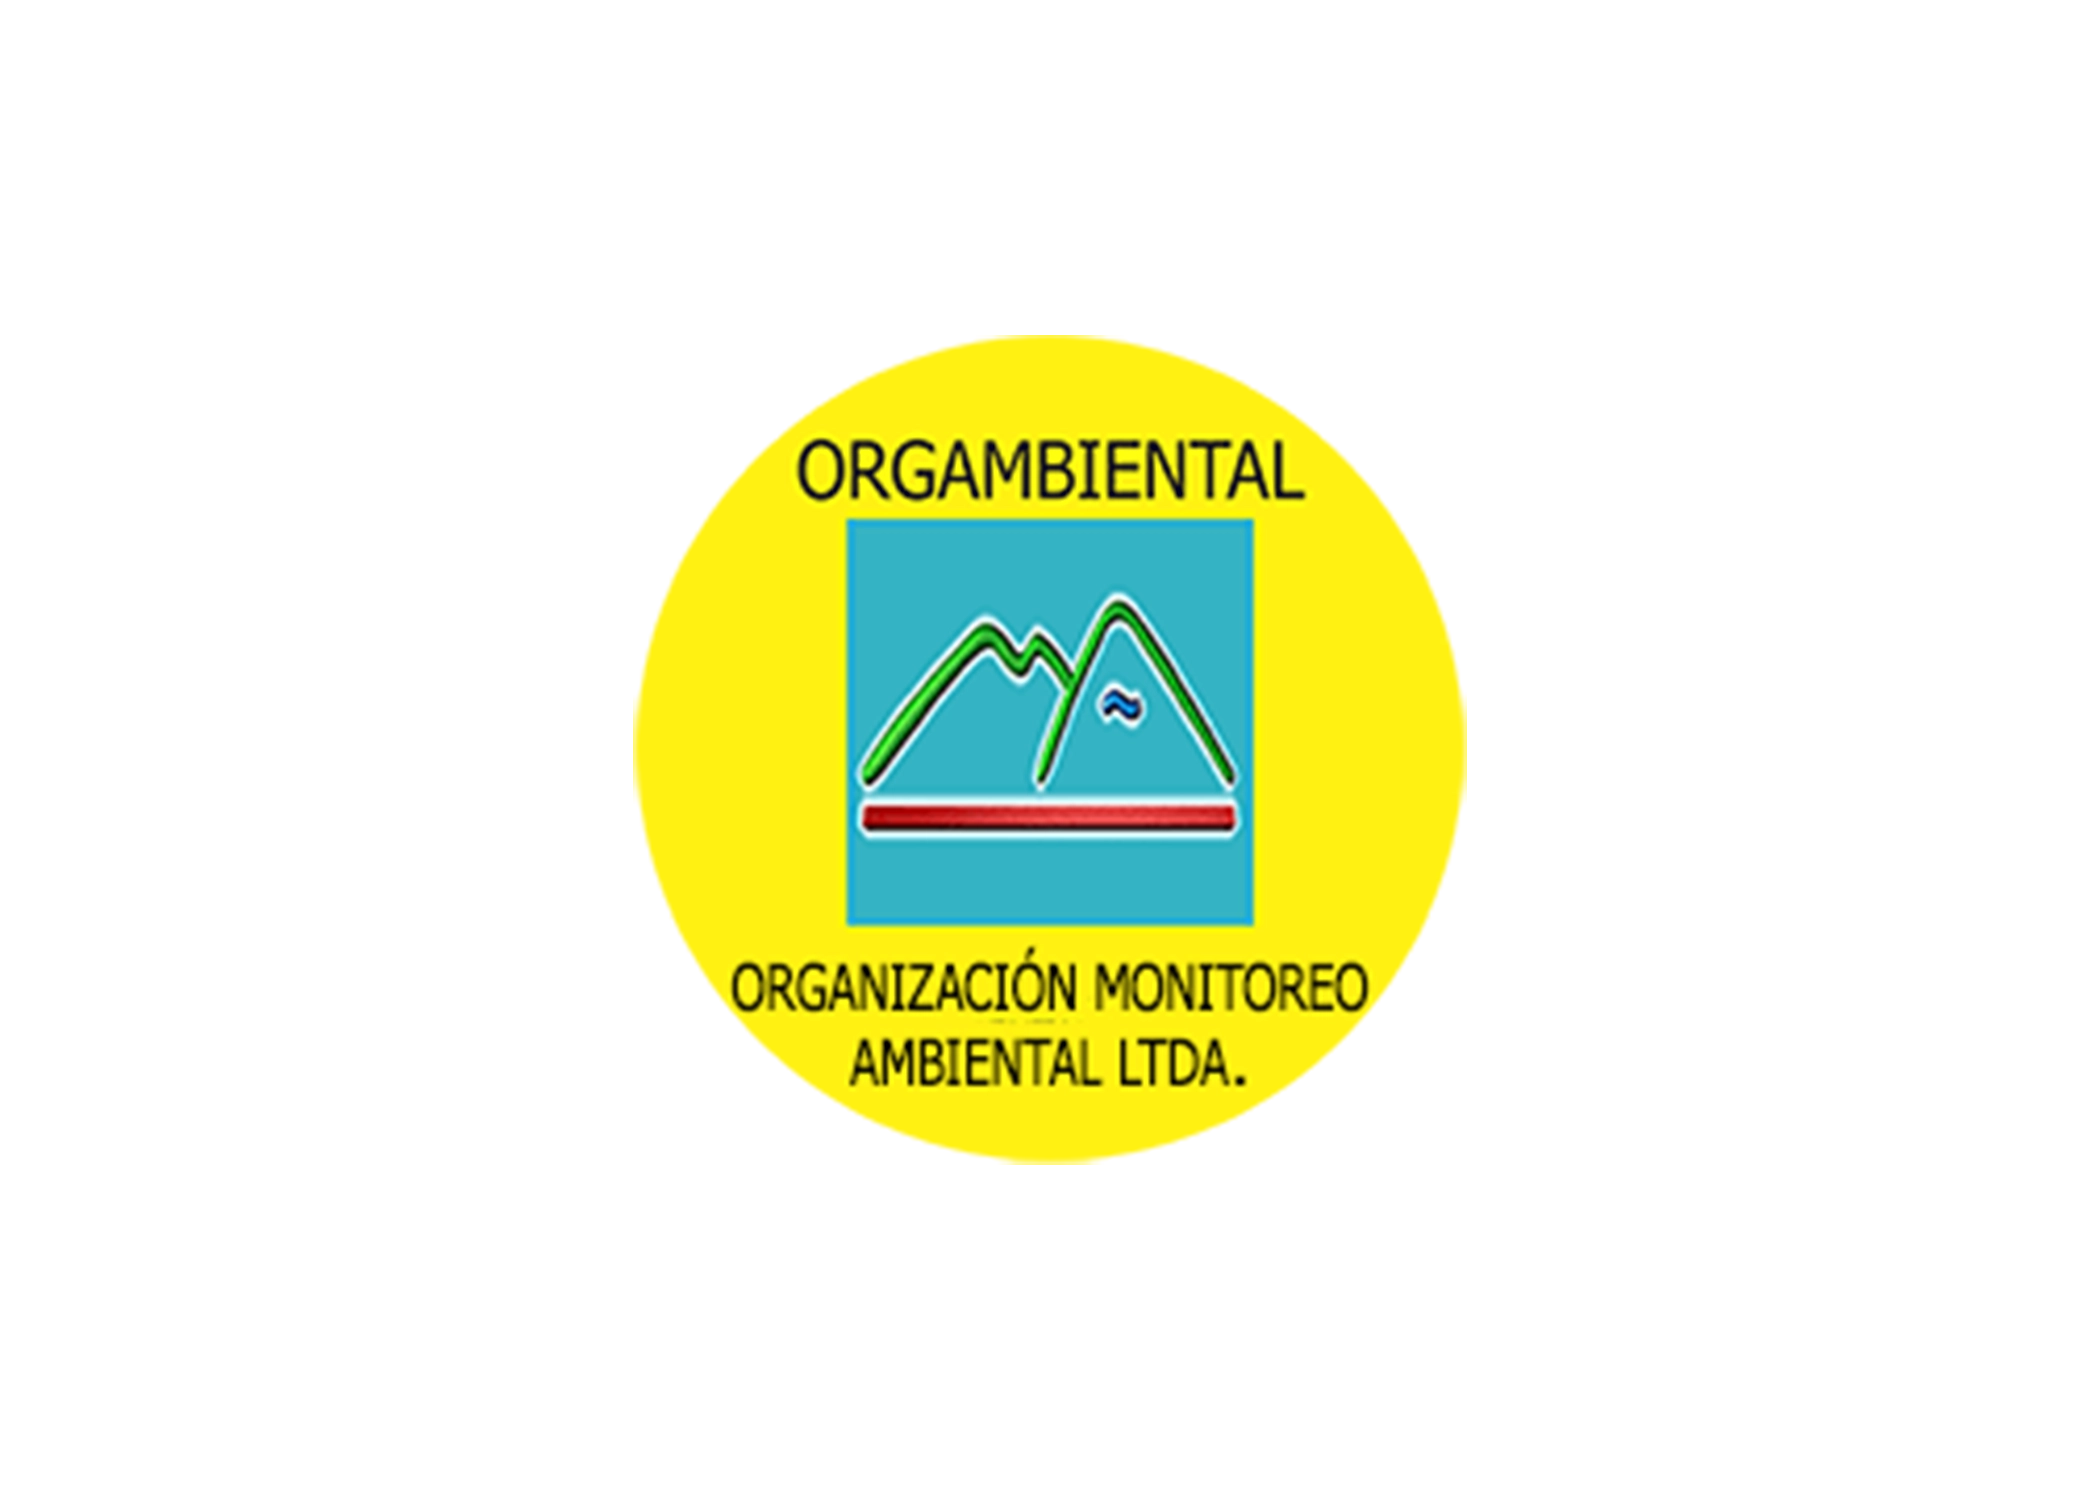 Organizacion Monitoreo Ambiental LTDA (Orgambiental) logo